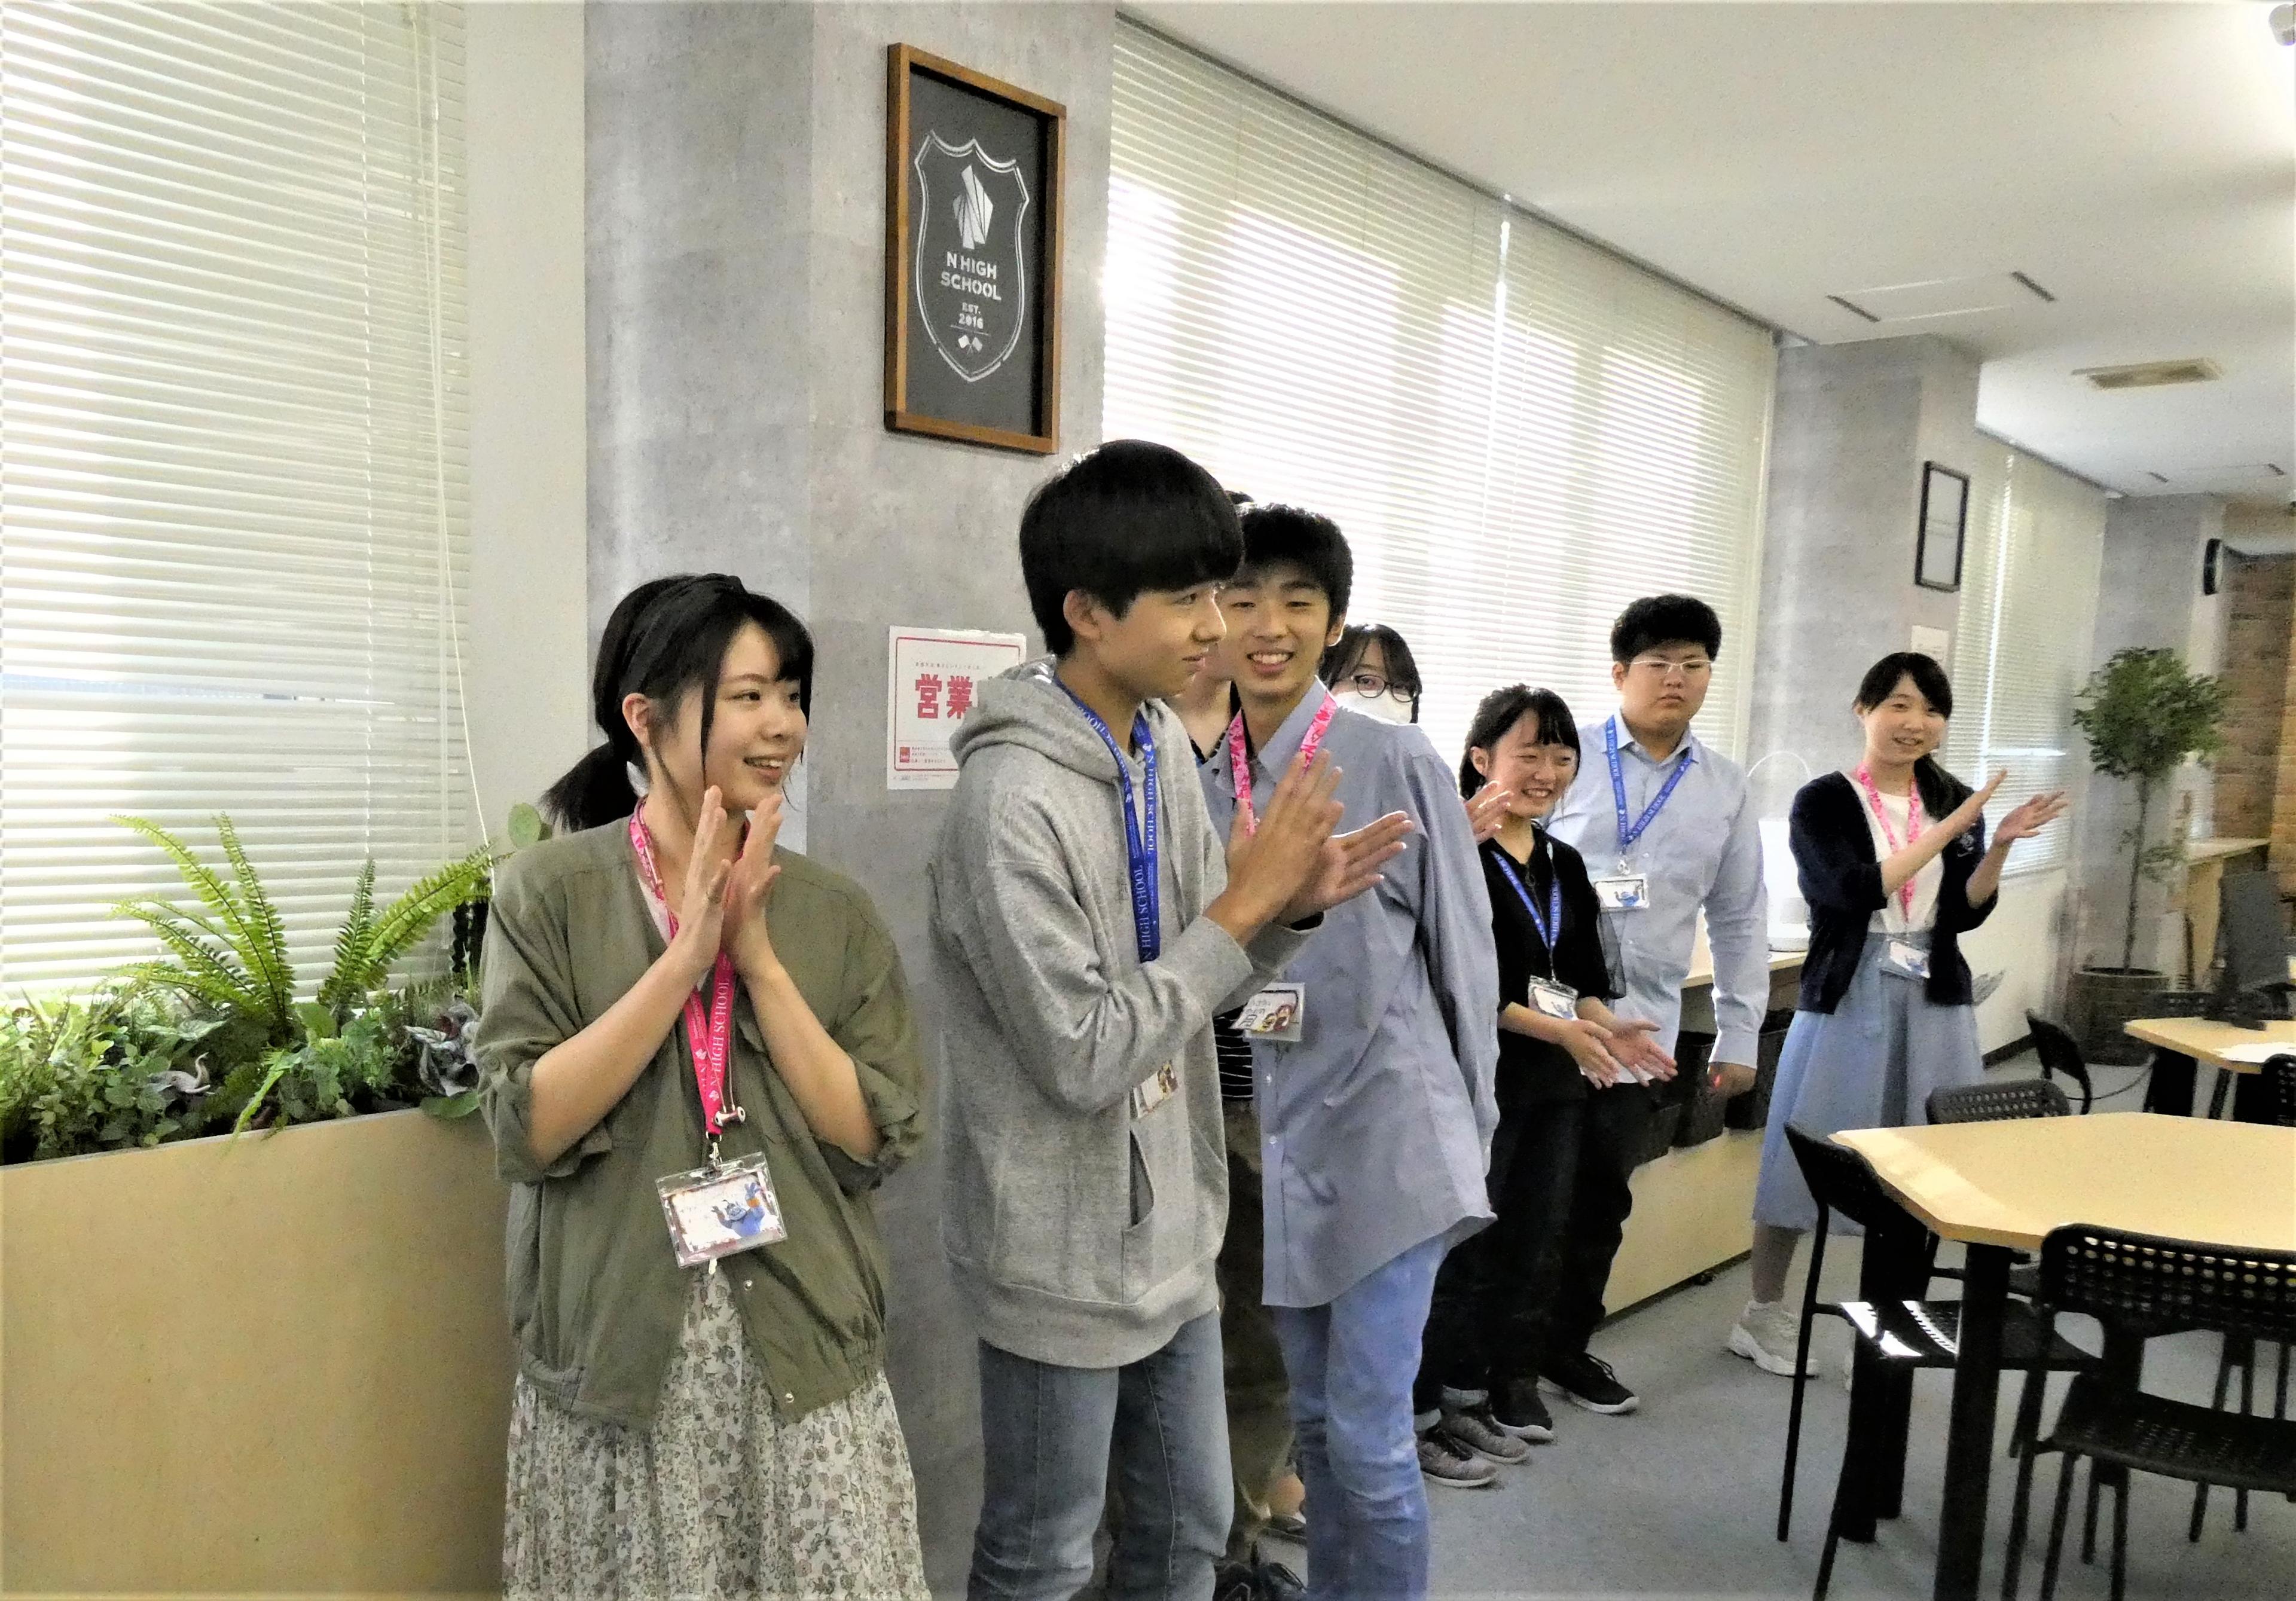 【新入生歓迎会】4人の新入生を迎えた仙台キャンパス